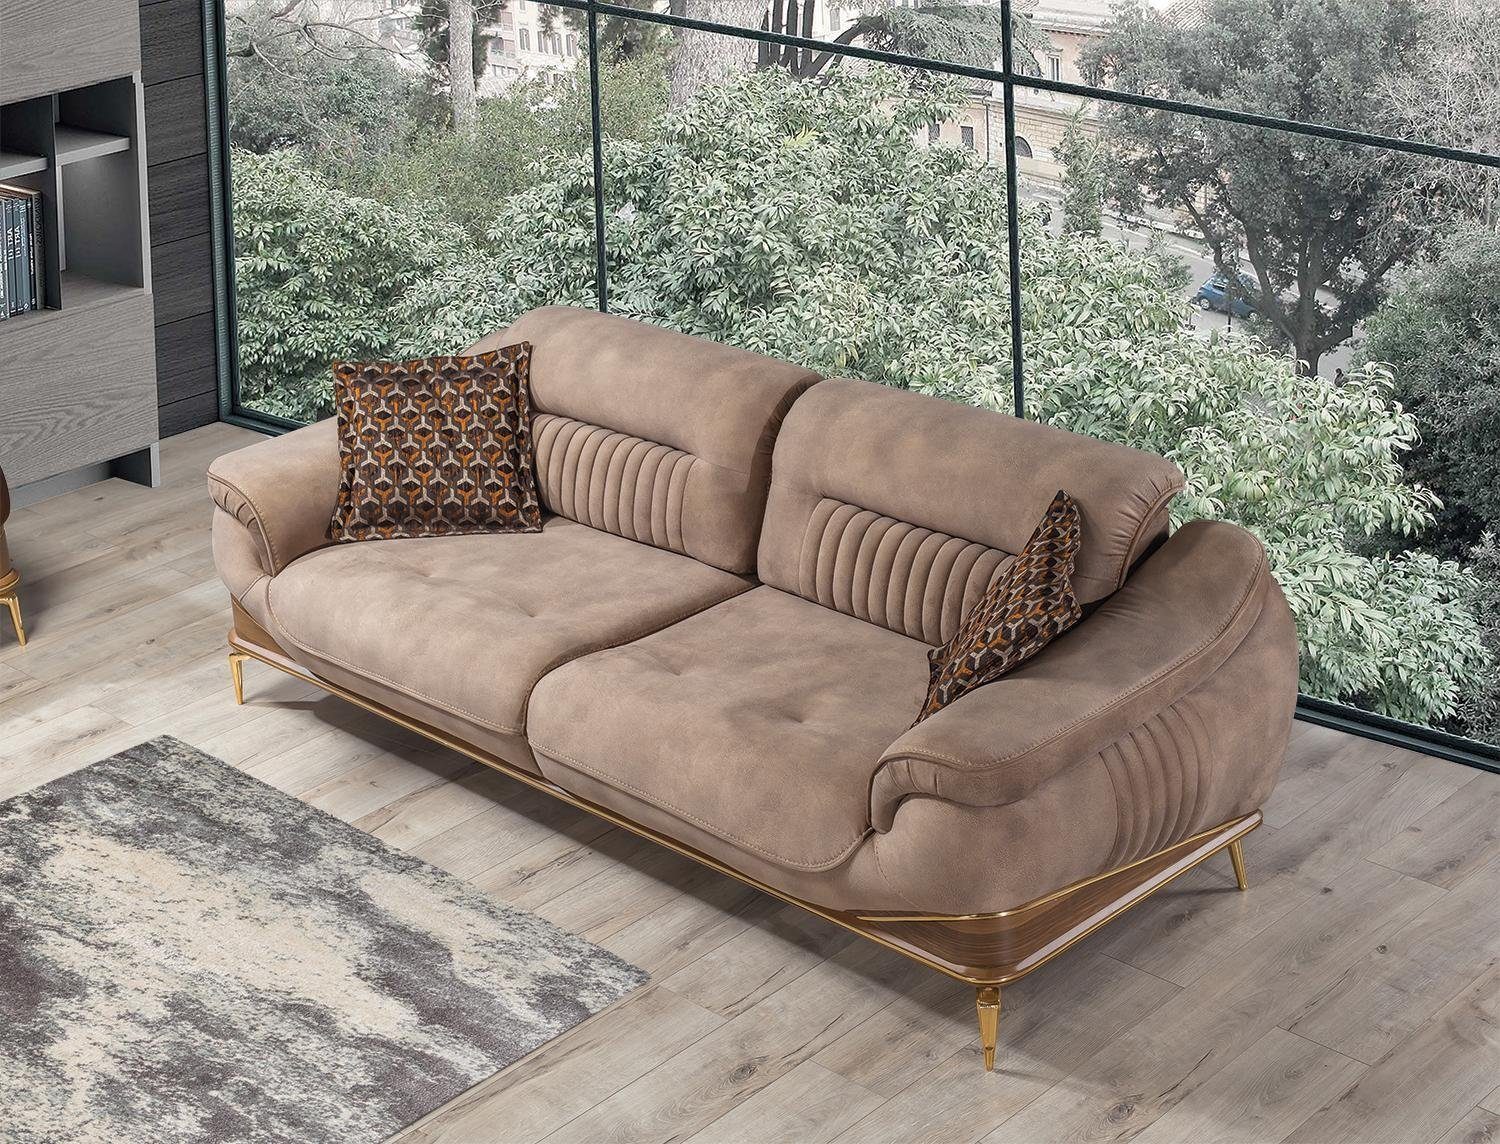 Sofa Neu Dreisitzer Modern Teile, MAde Sofas Couch Sofa Einrichtung, in Europa Wohnzimmer Luxus 1 JVmoebel